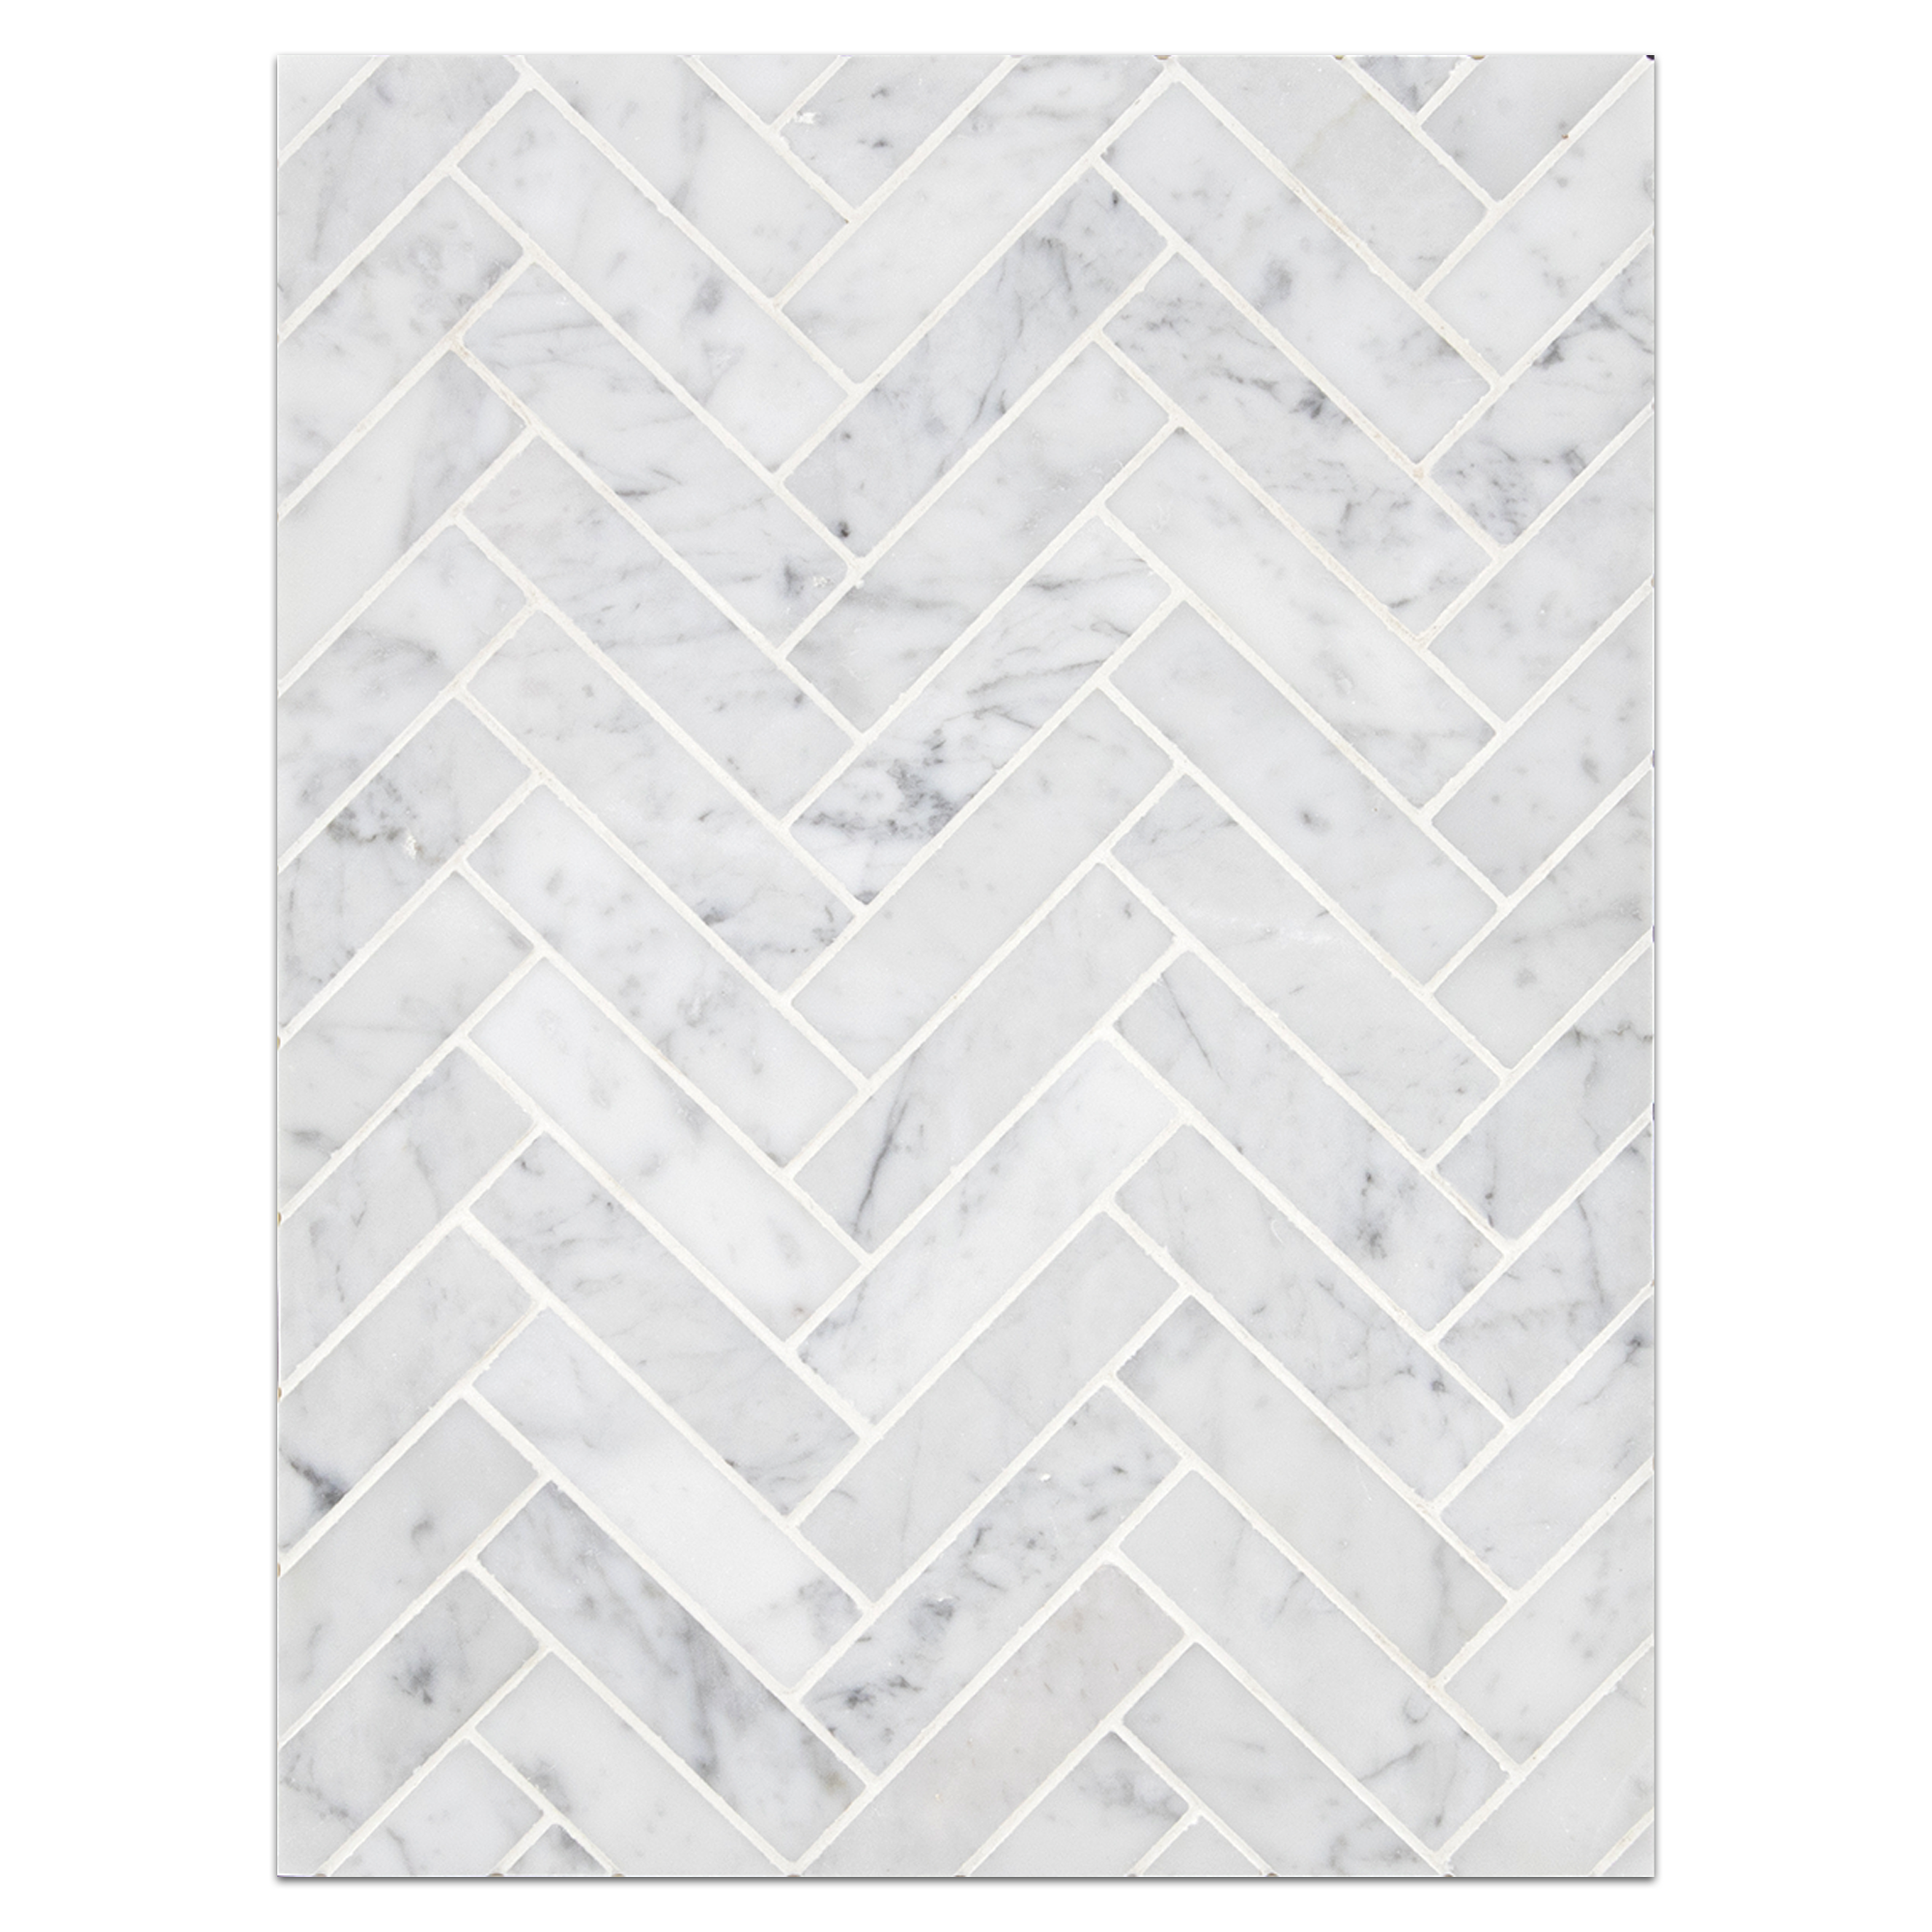 Herringbone Mosaic Boards